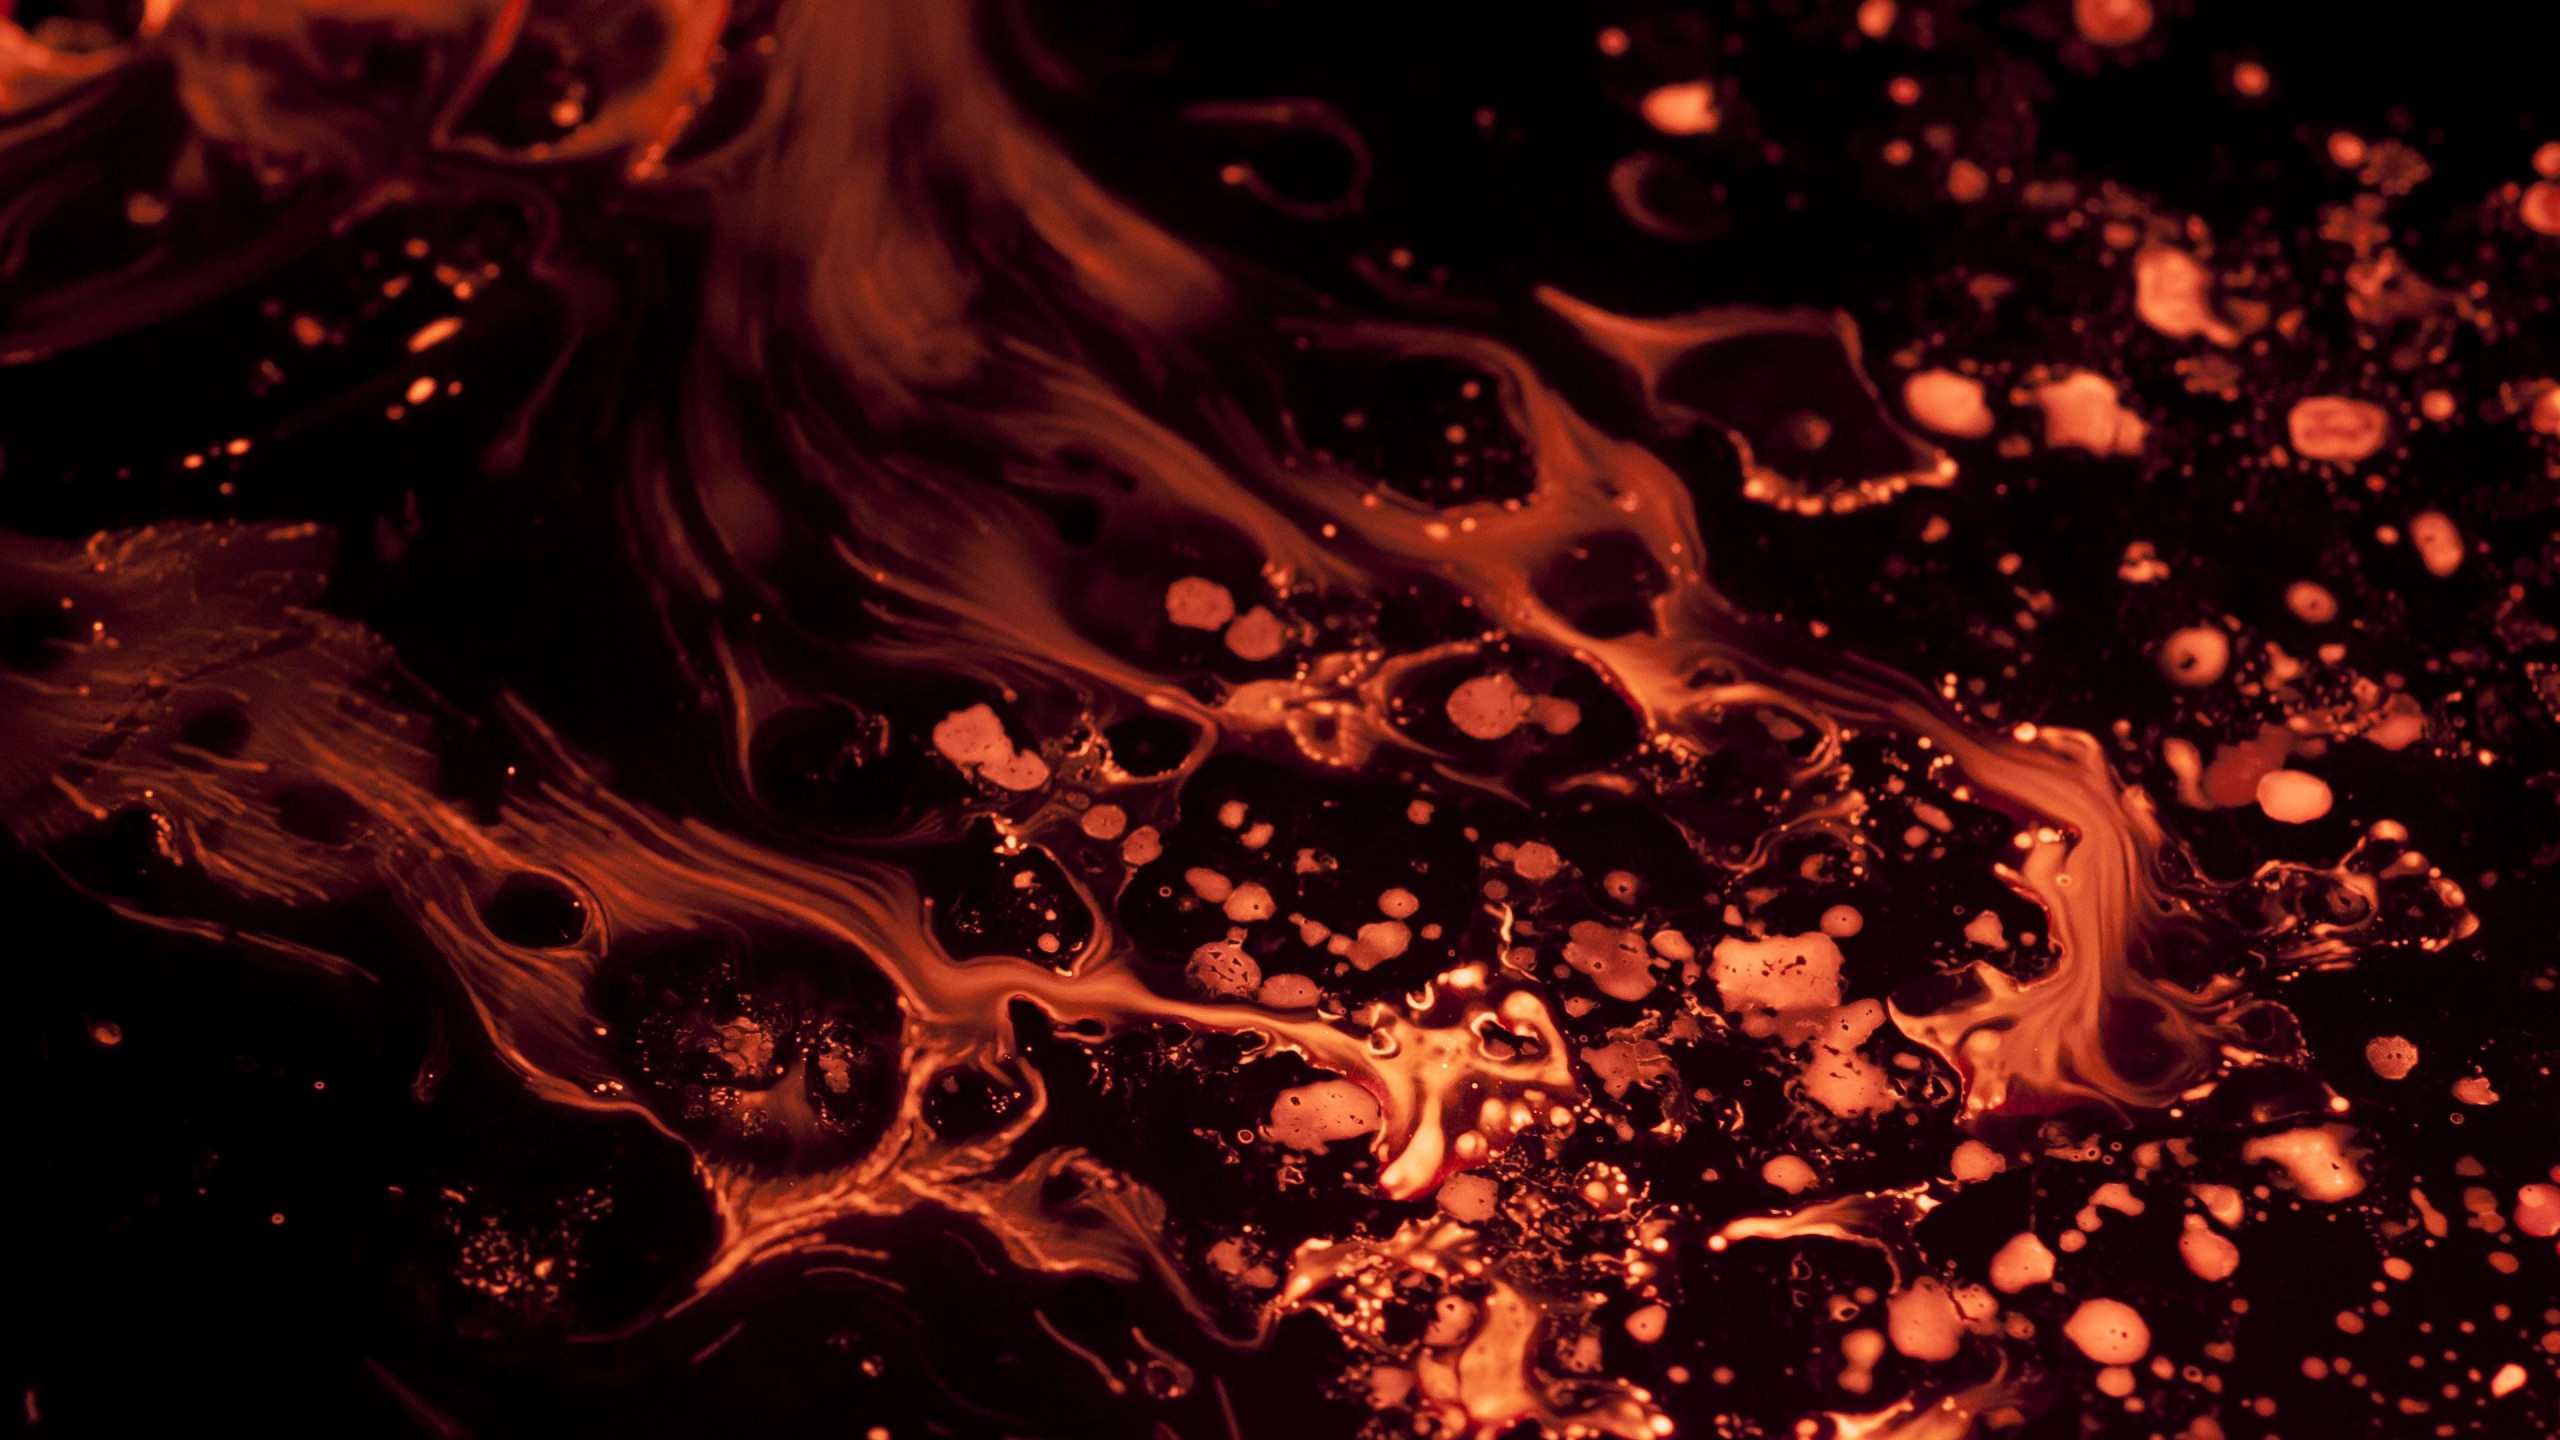 Liquid flame wallpaper 2560x1440